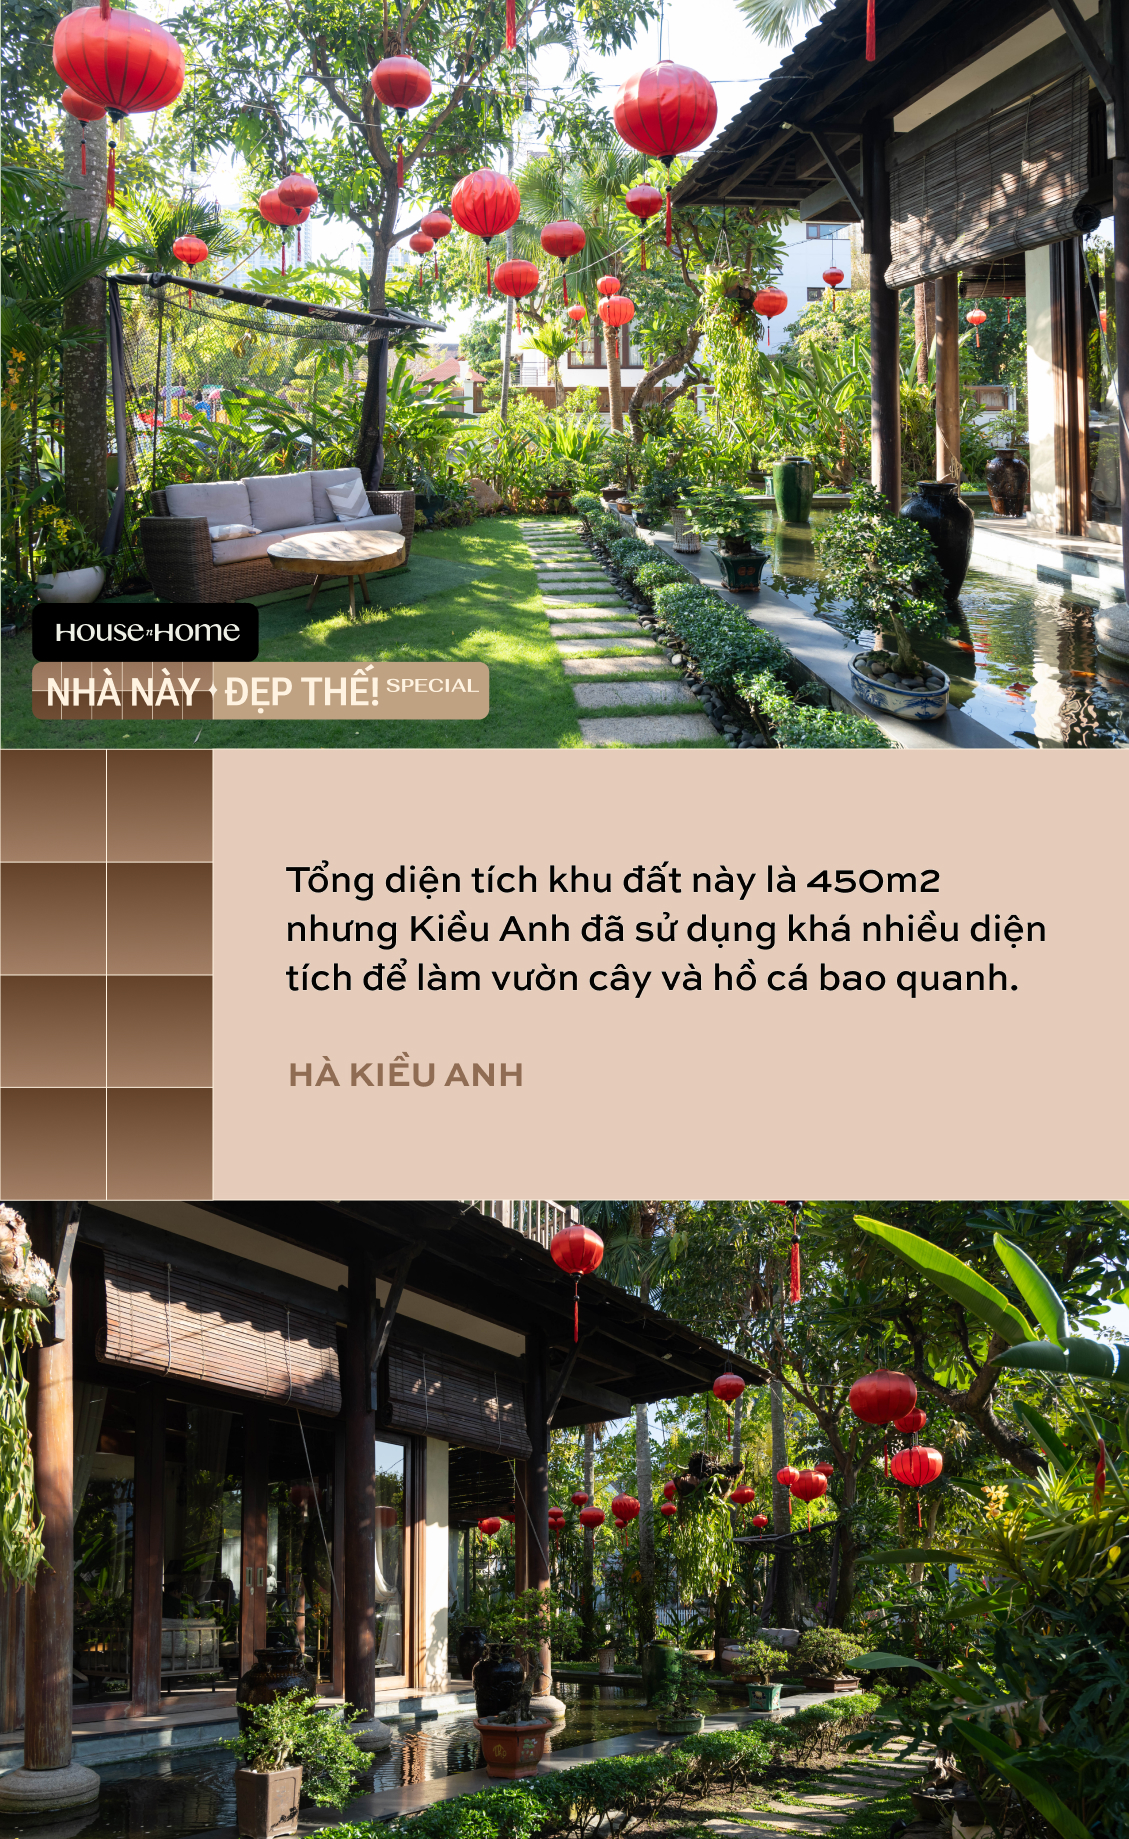 Biệt thự nhà vườn gần 20 năm tuổi của HH Hà Kiều Anh: Phong vị Á Đông cổ kính, khẳng định không bao giờ bán - Ảnh 11.